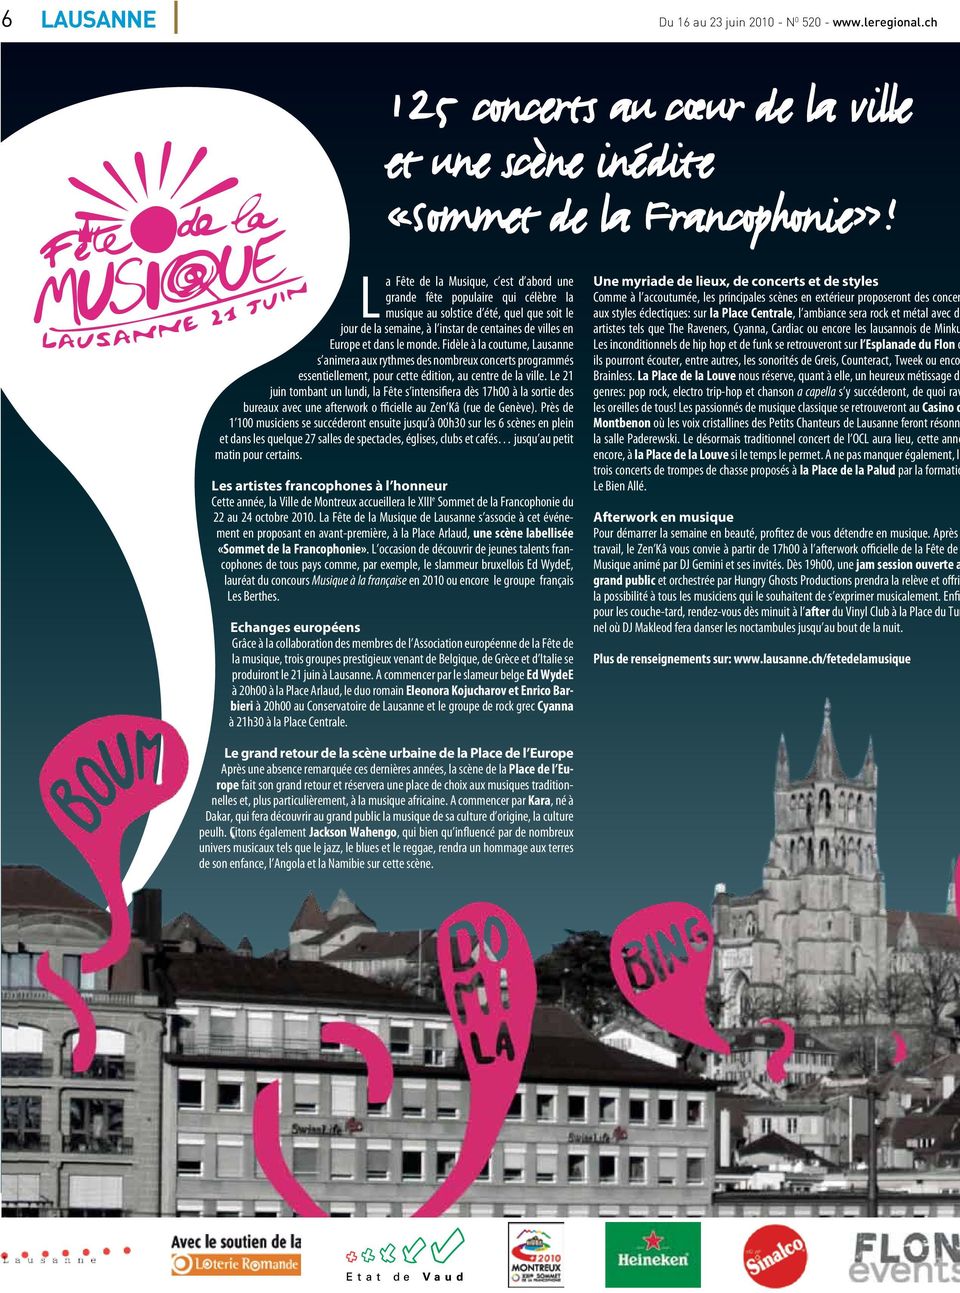 Fidèle à la coutume, Lausanne s animera aux rythmes s nombreux concerts programmés essentiellement, pour cette édition, au centre la ville.